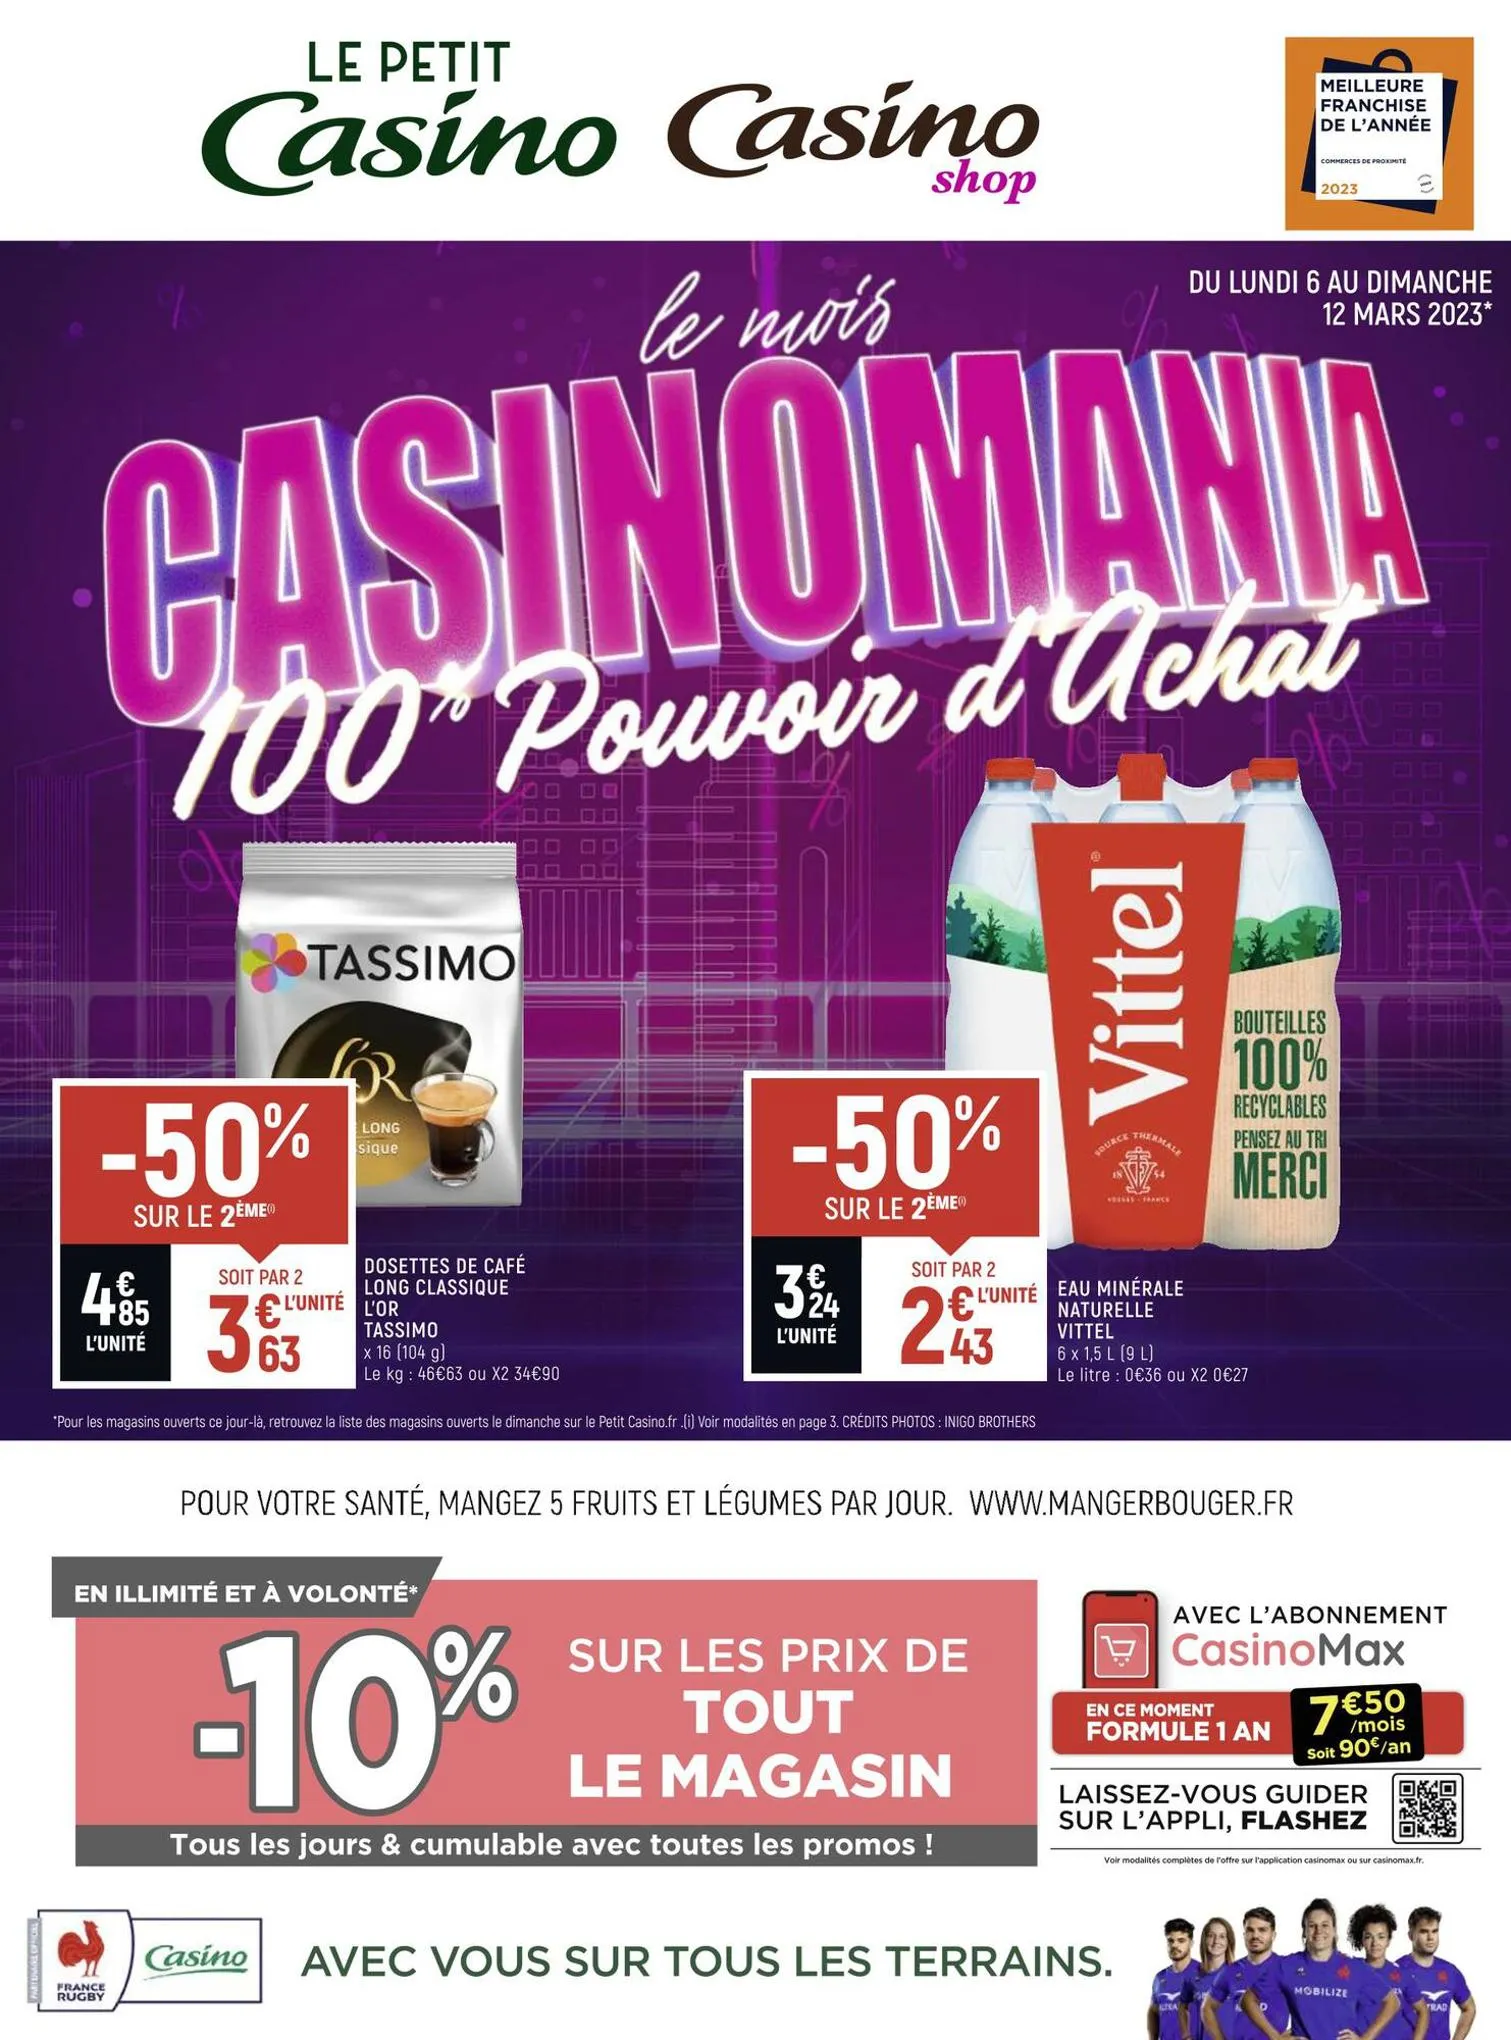 Catalogue Le mois Casinomania 100% pouvoir d'achat, page 00001